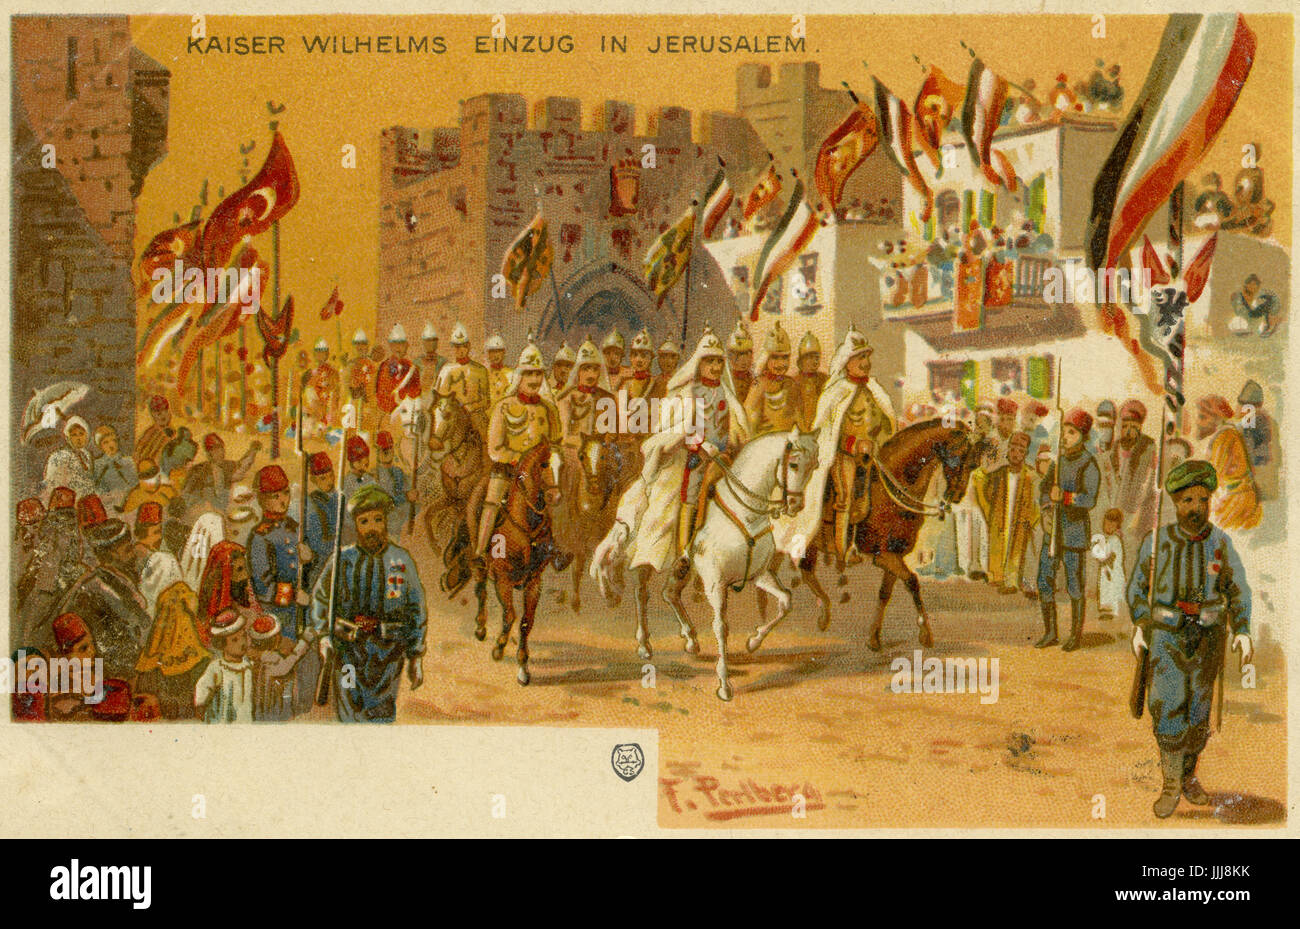 Eintrag von Kaiser Wilhelm II. in Jerusalem, königlichen Besuch von 1898 Stockfoto